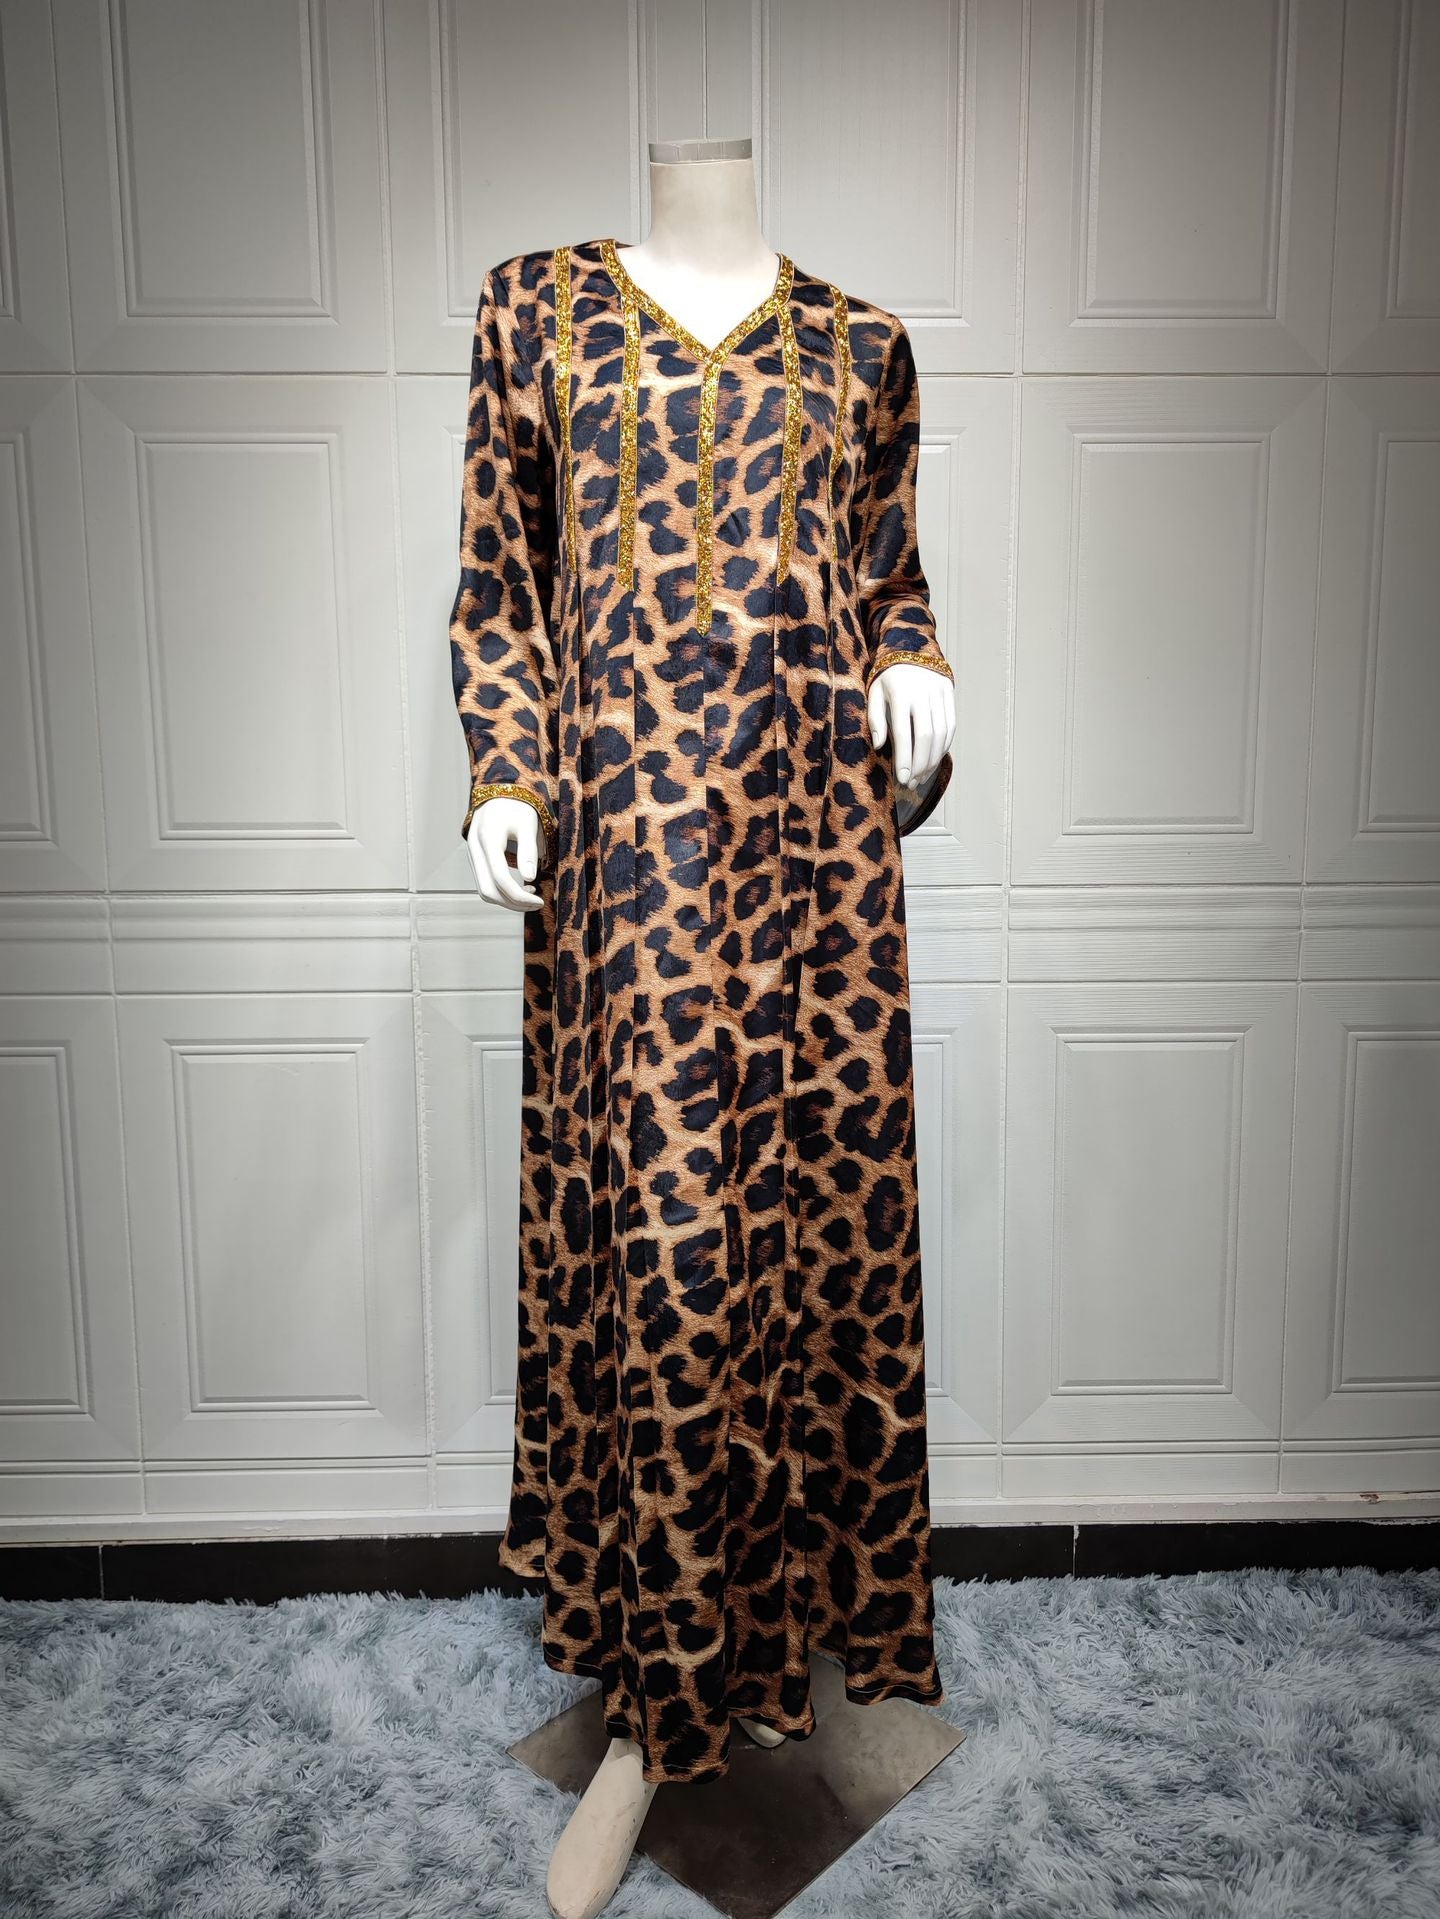 Leopard Print Brown Maxi Dress